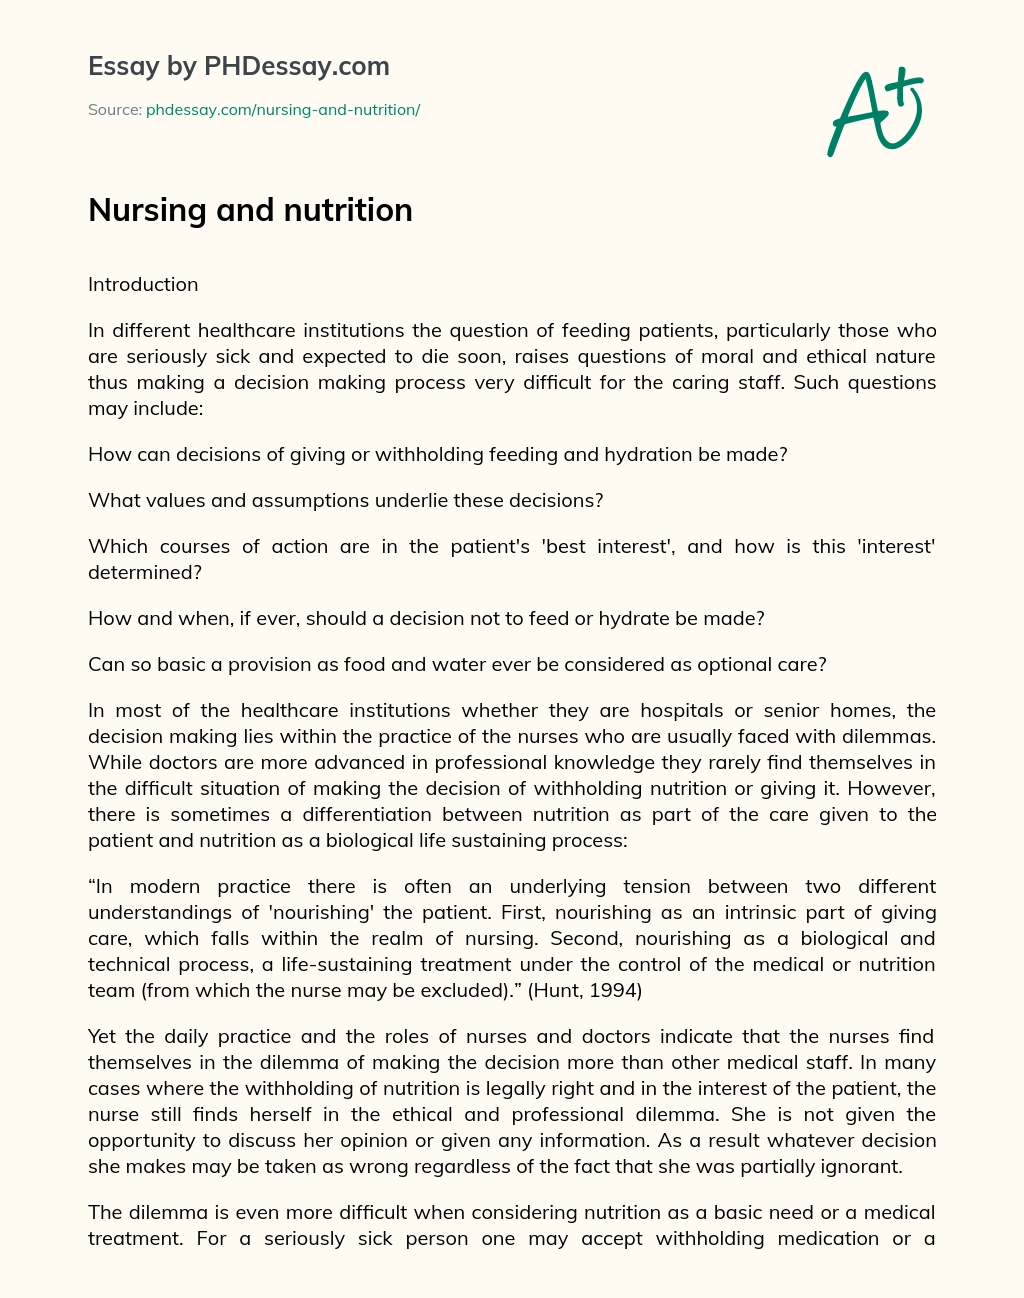 Nursing and nutrition essay